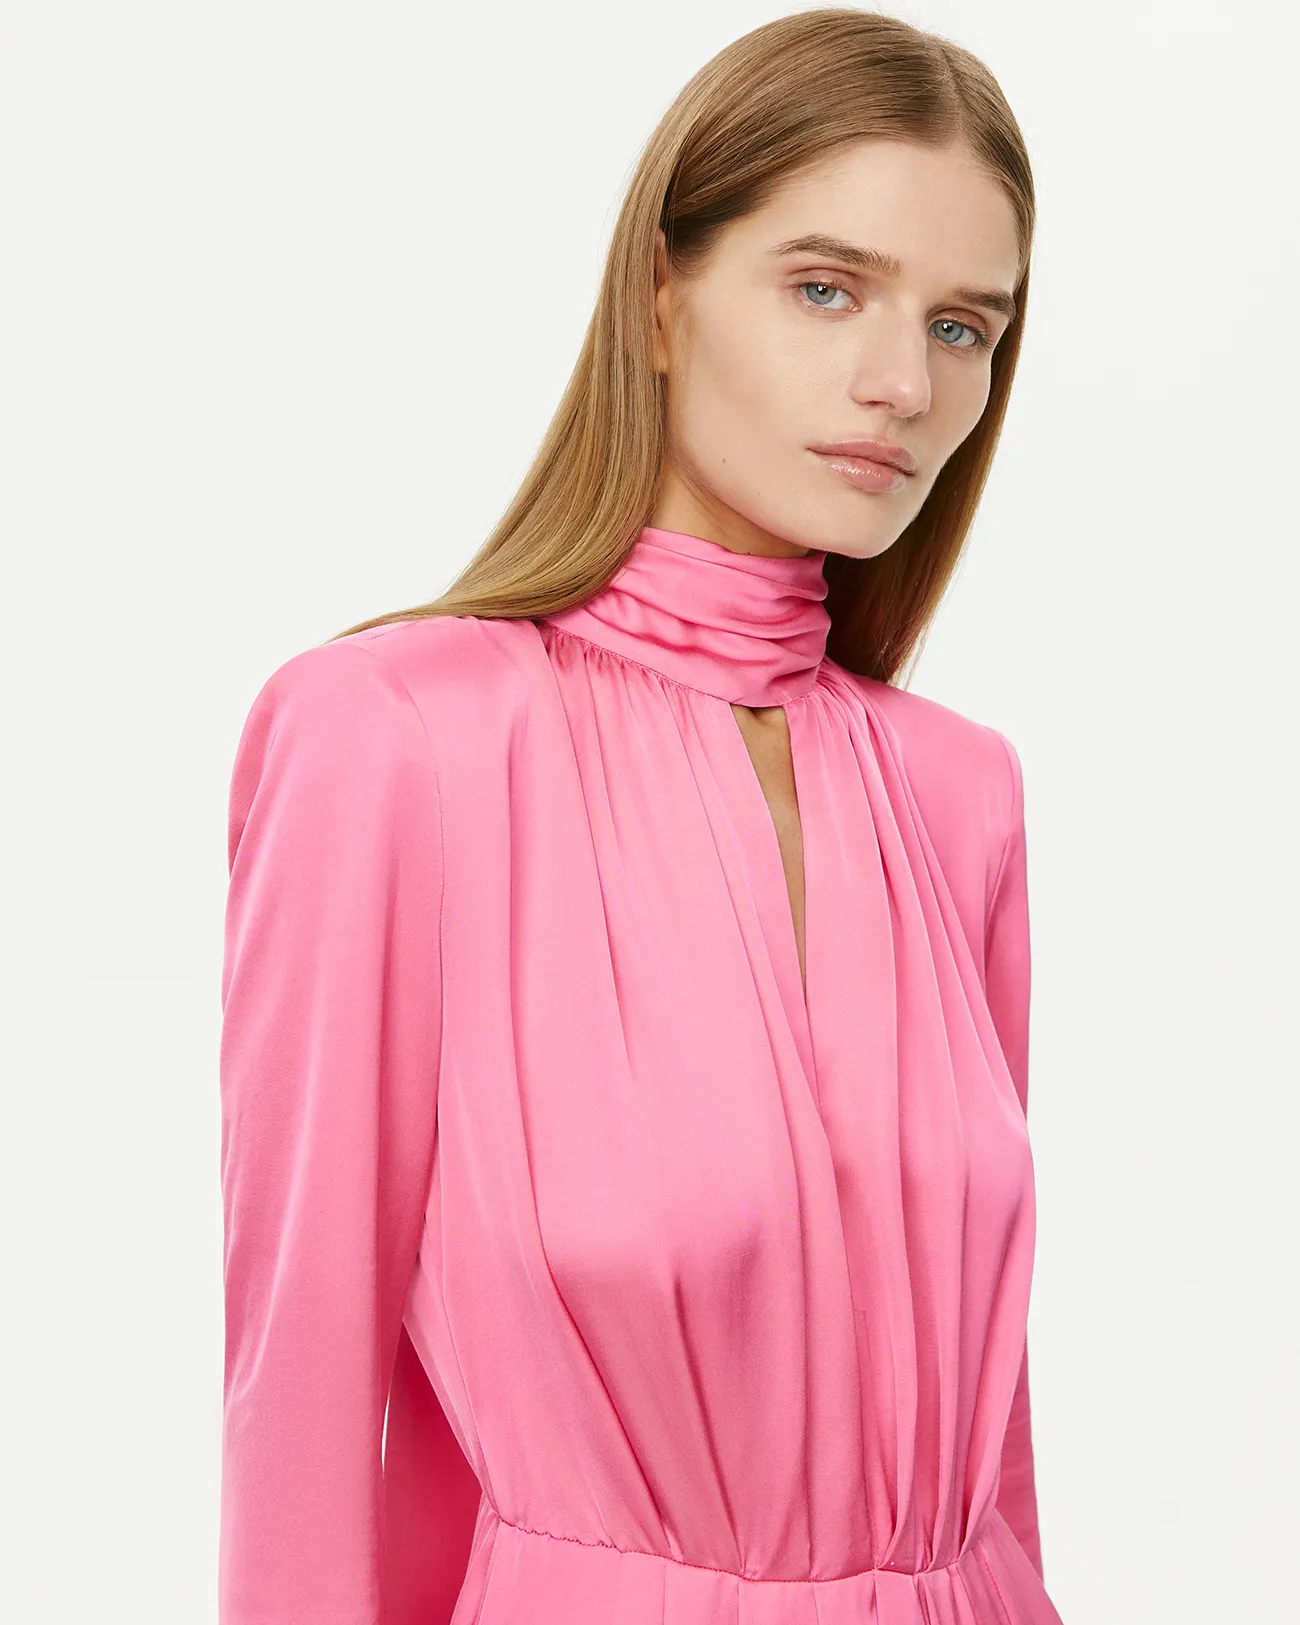 Платье макси с шарфом розового цвета